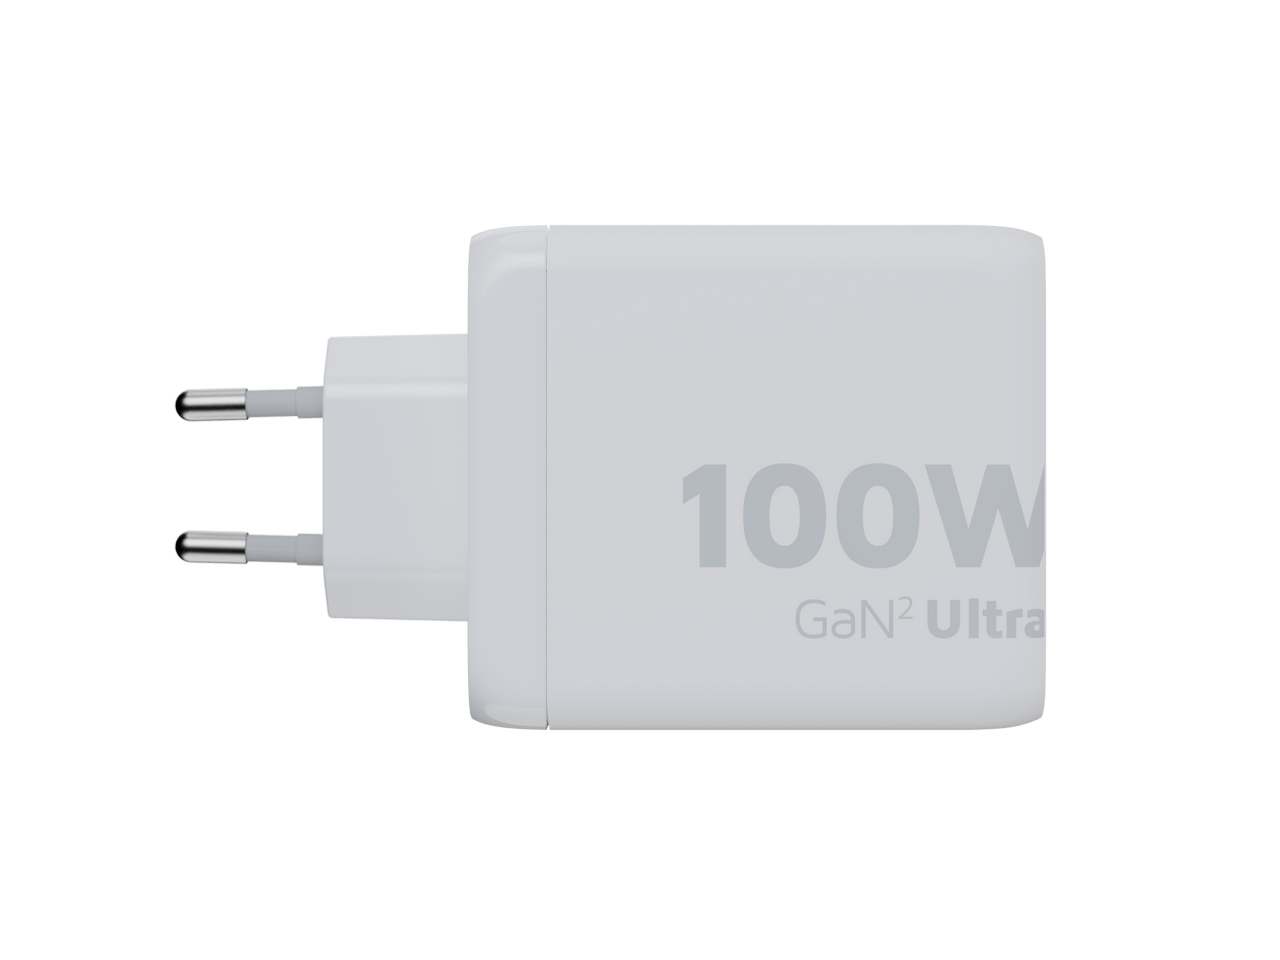 100W GaN2 Ultra Ladegeräte - Xtorm DE